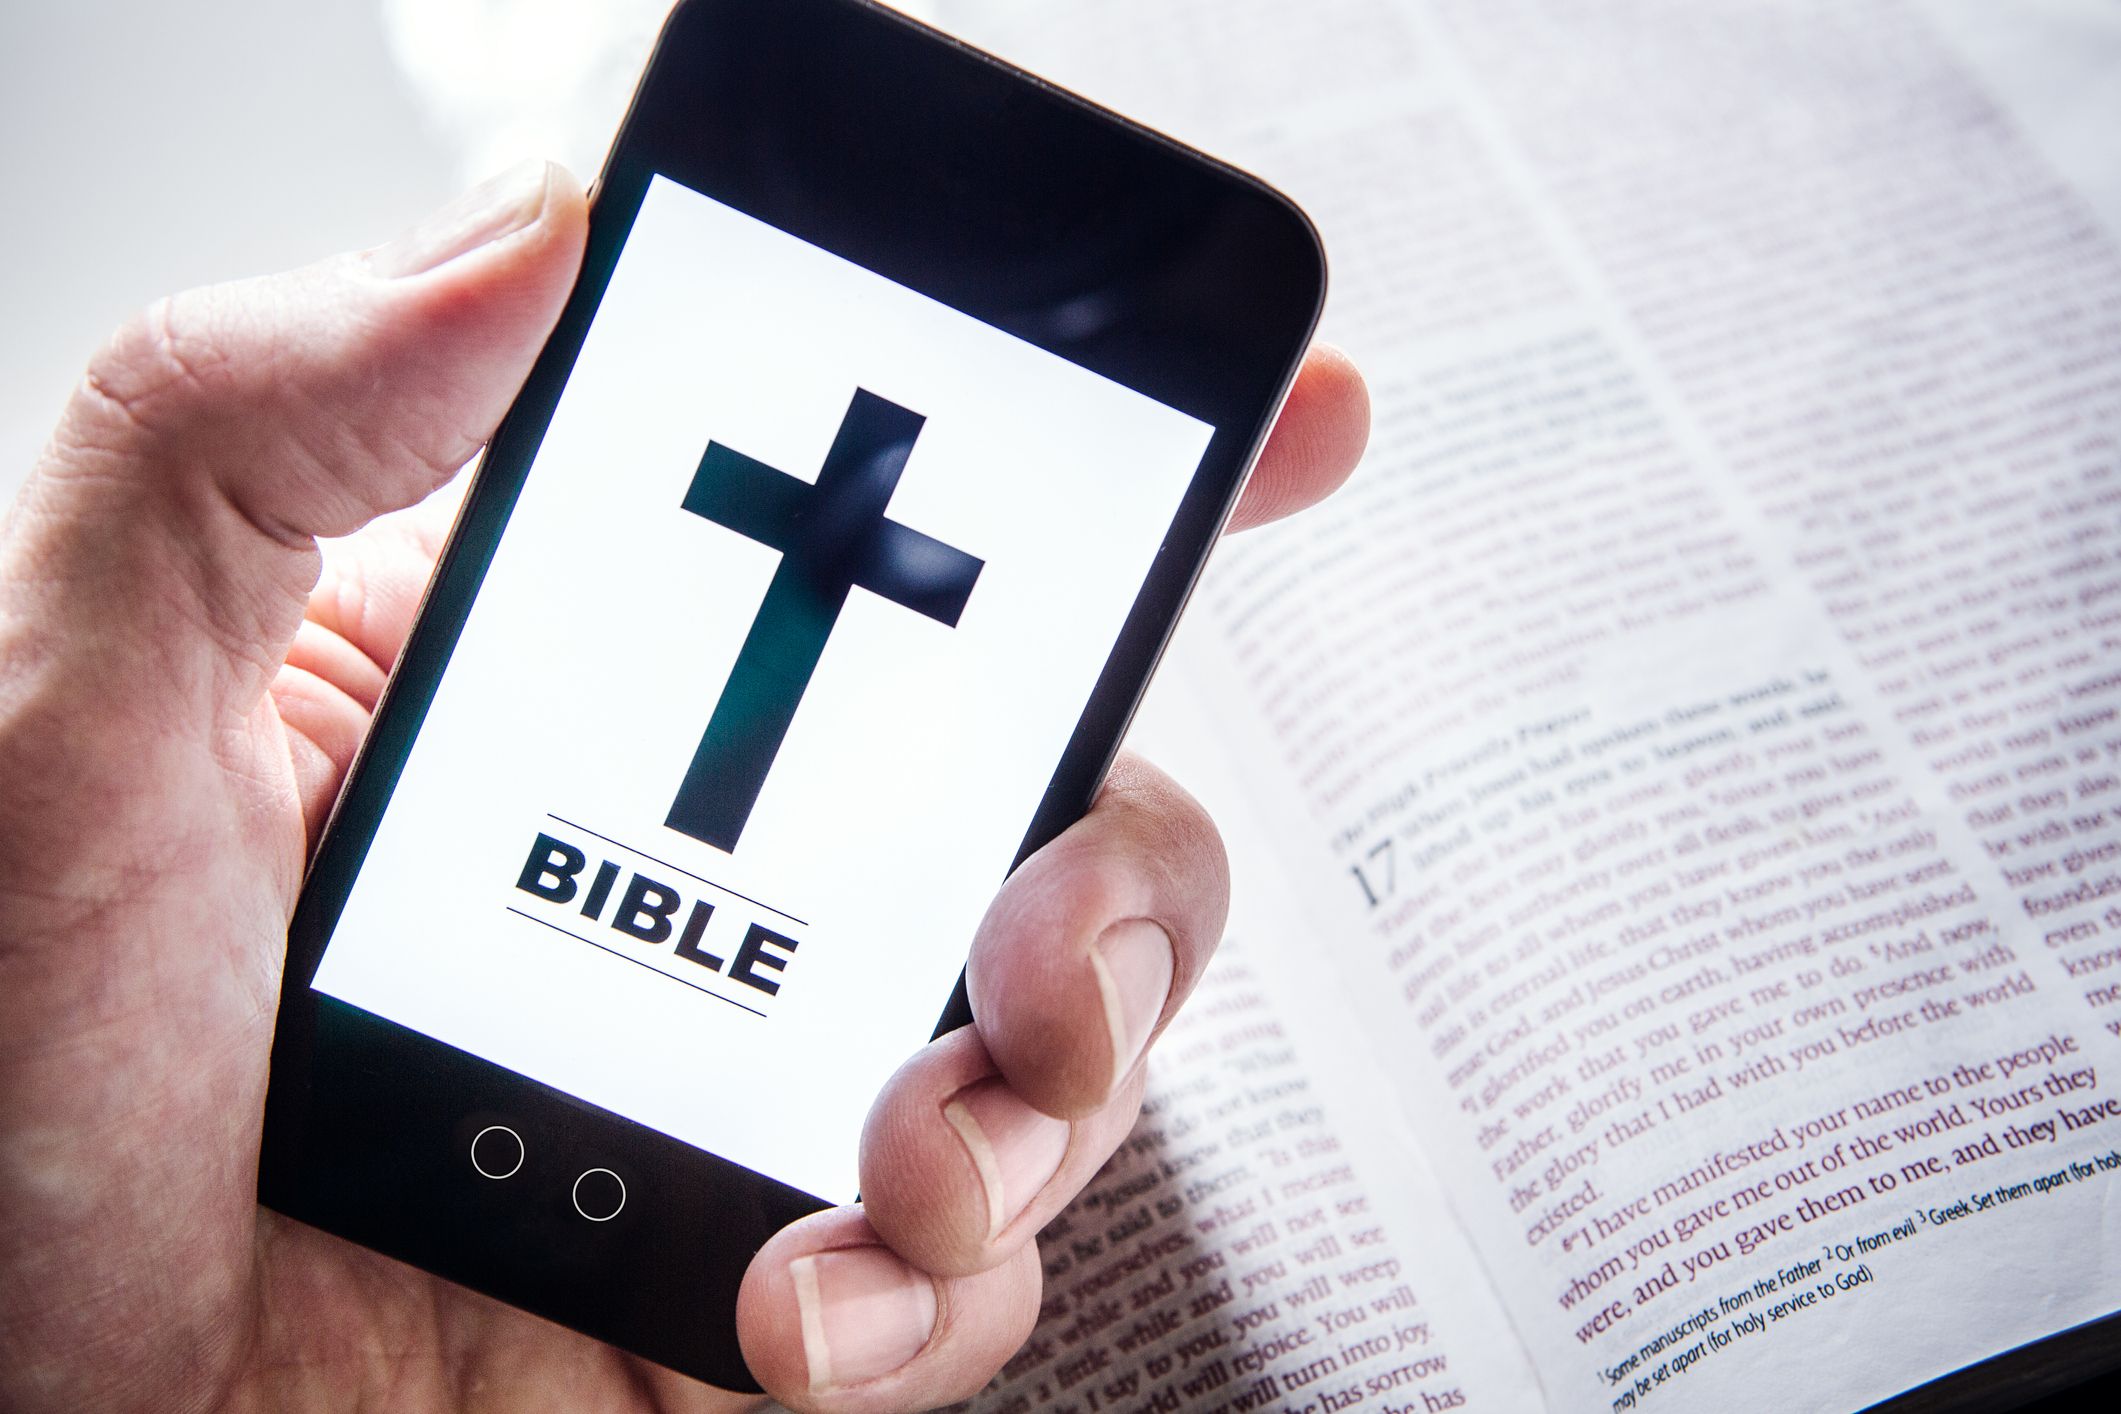 esv bible online gateway